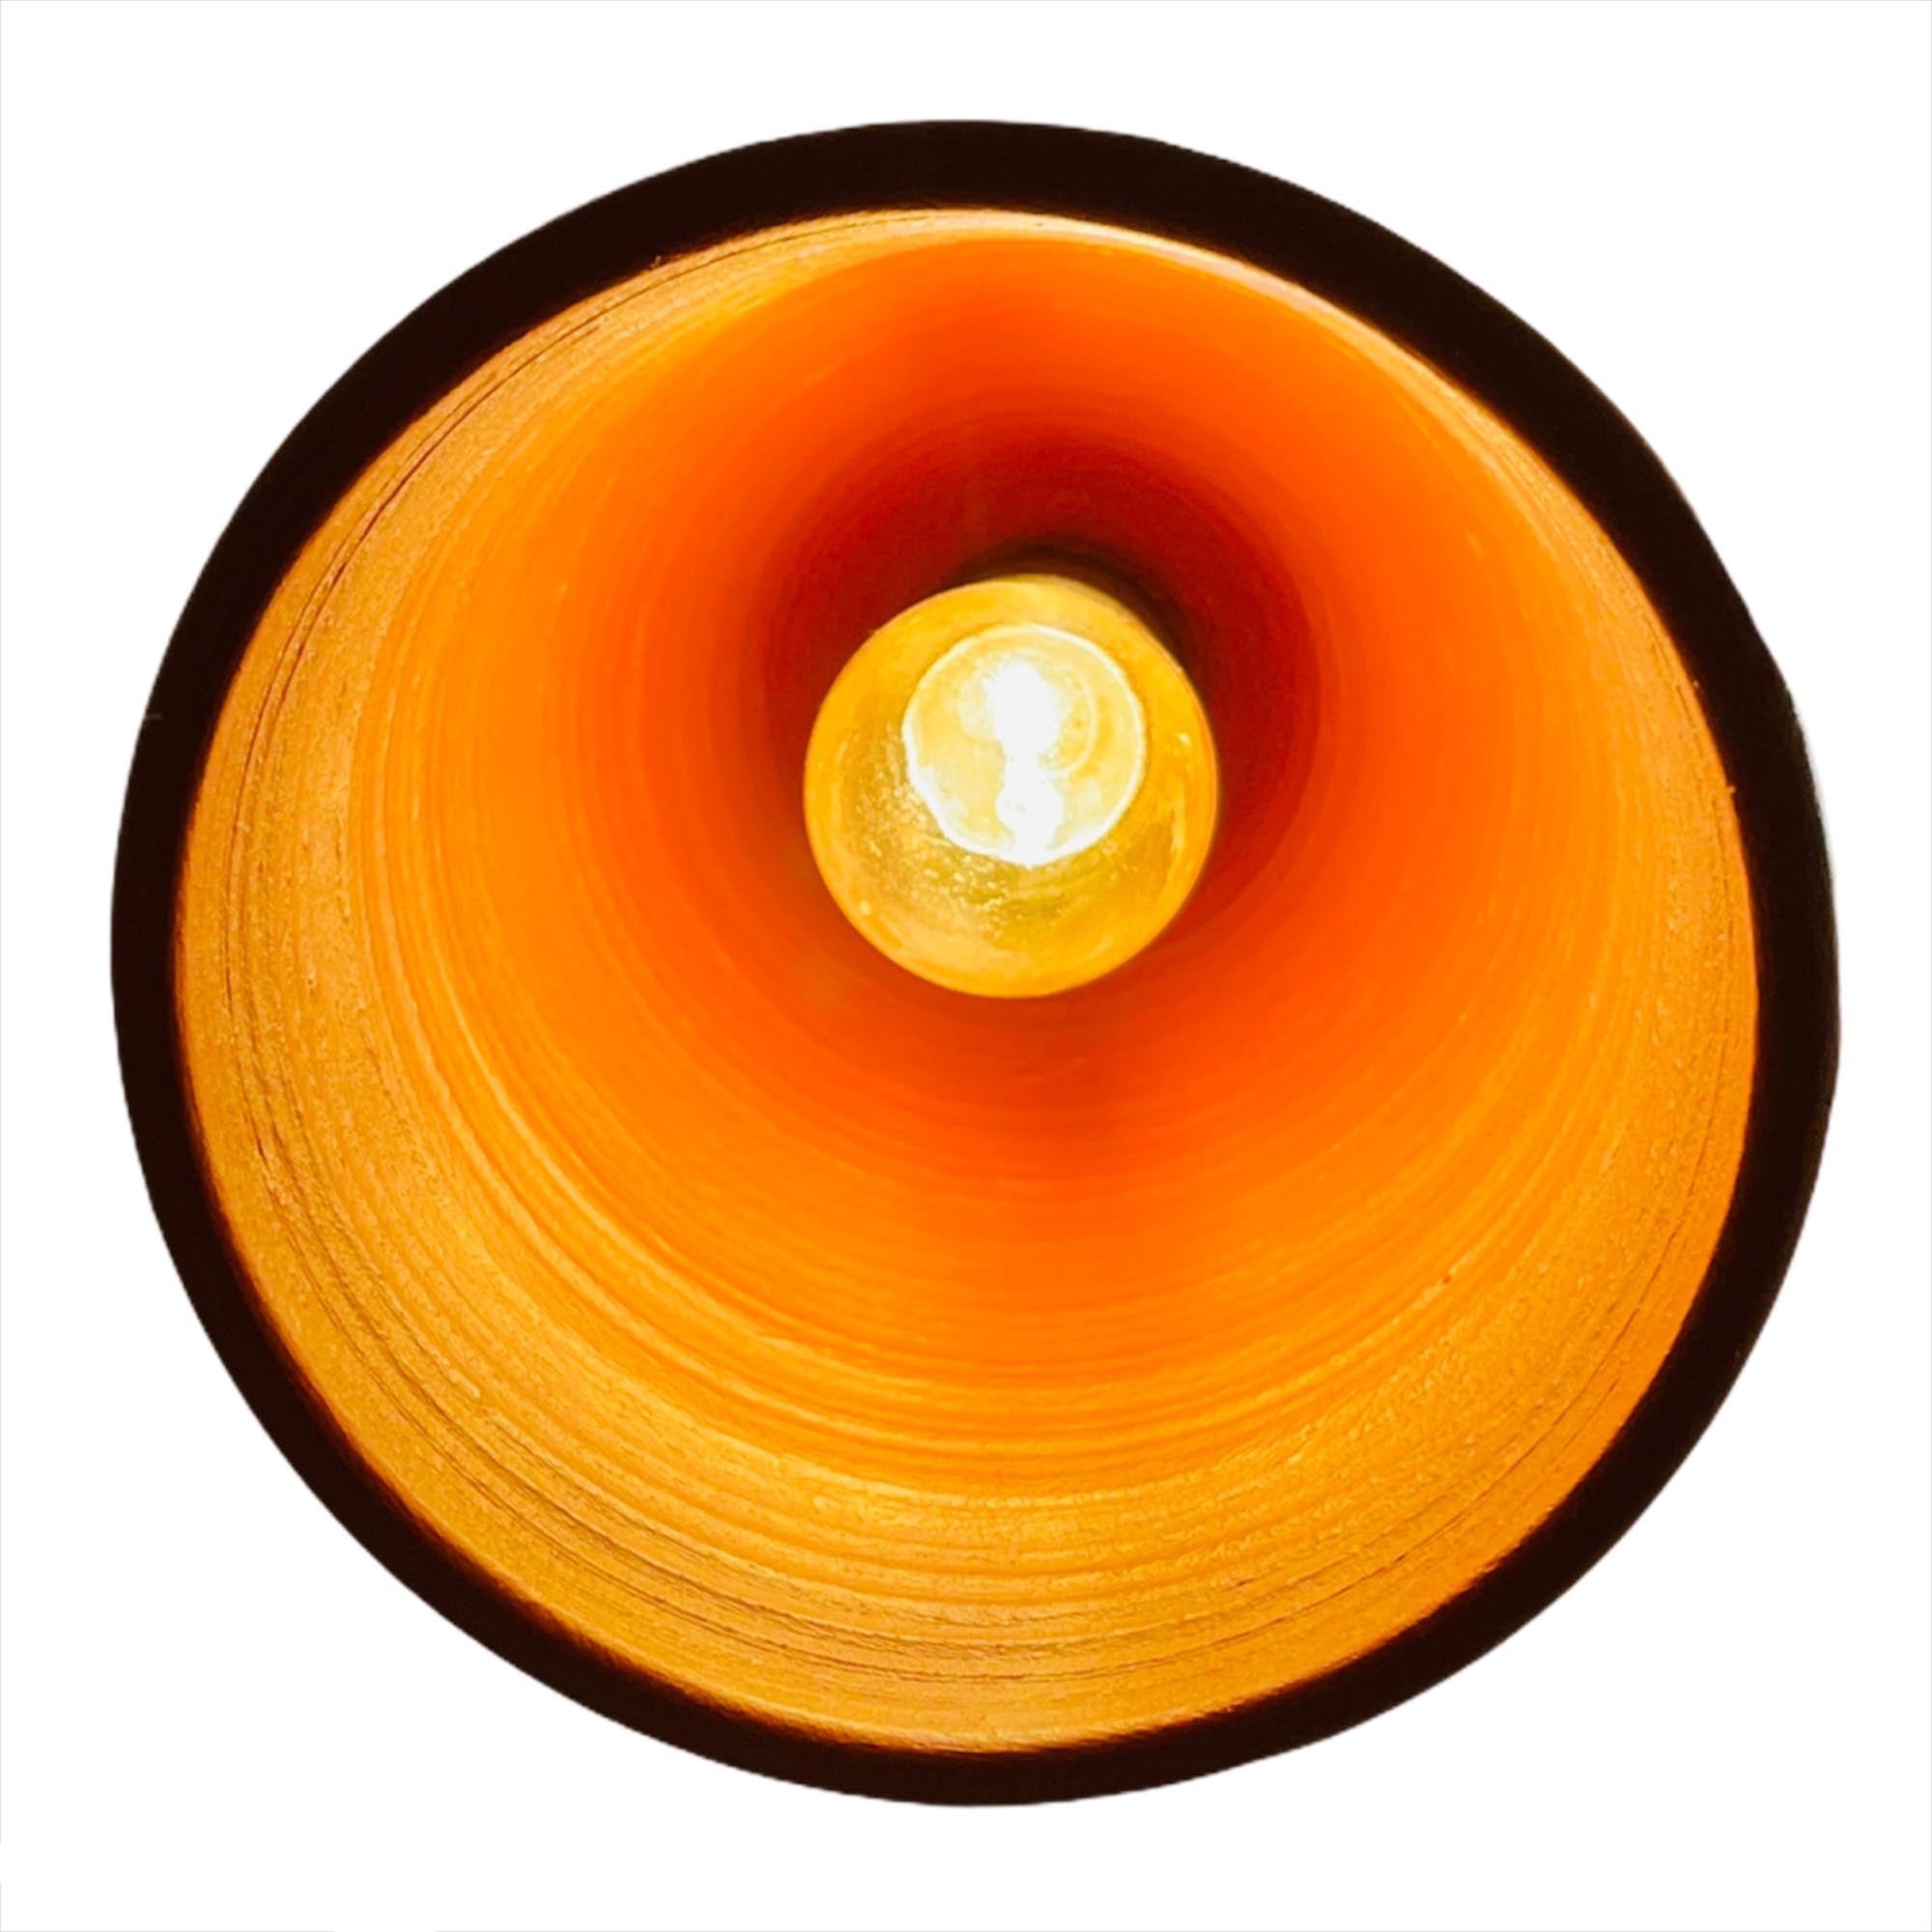 Подвесной светильник 12 х 22 см керамический, топаз коричневый